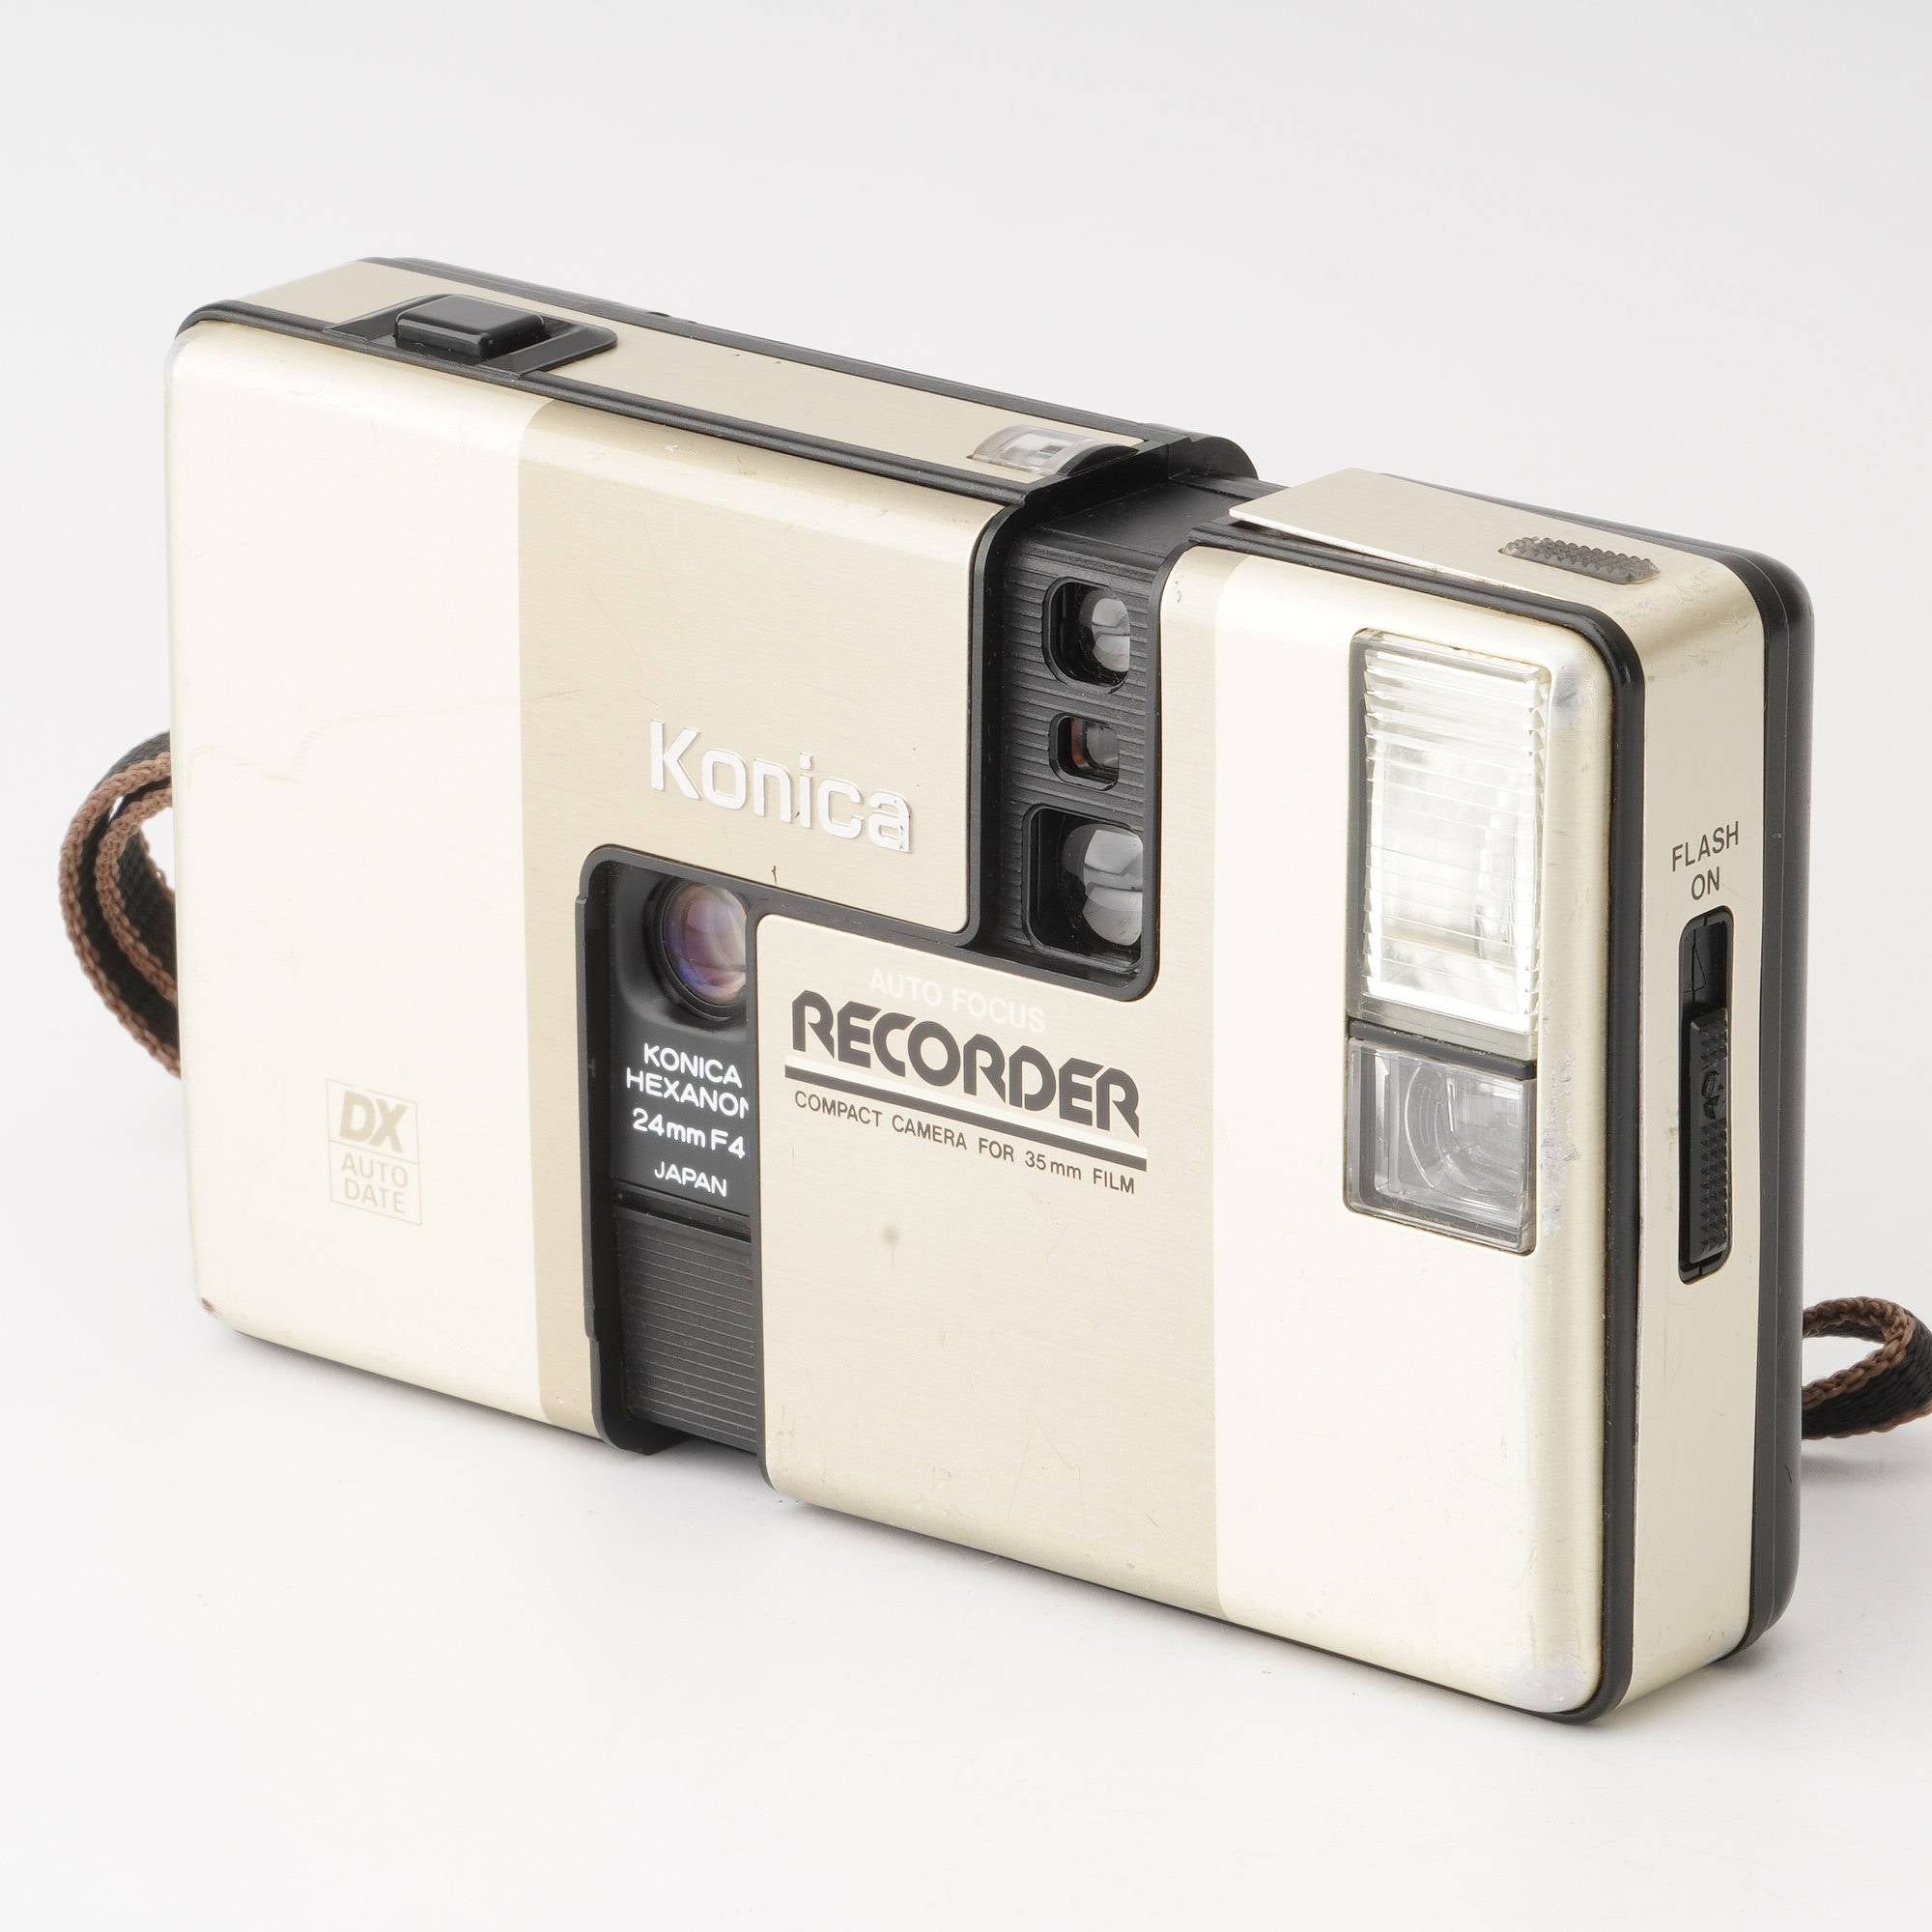 コニカ レコーダー Konica Recorder 24mmカメラ【動作確認済】24mmカメラ